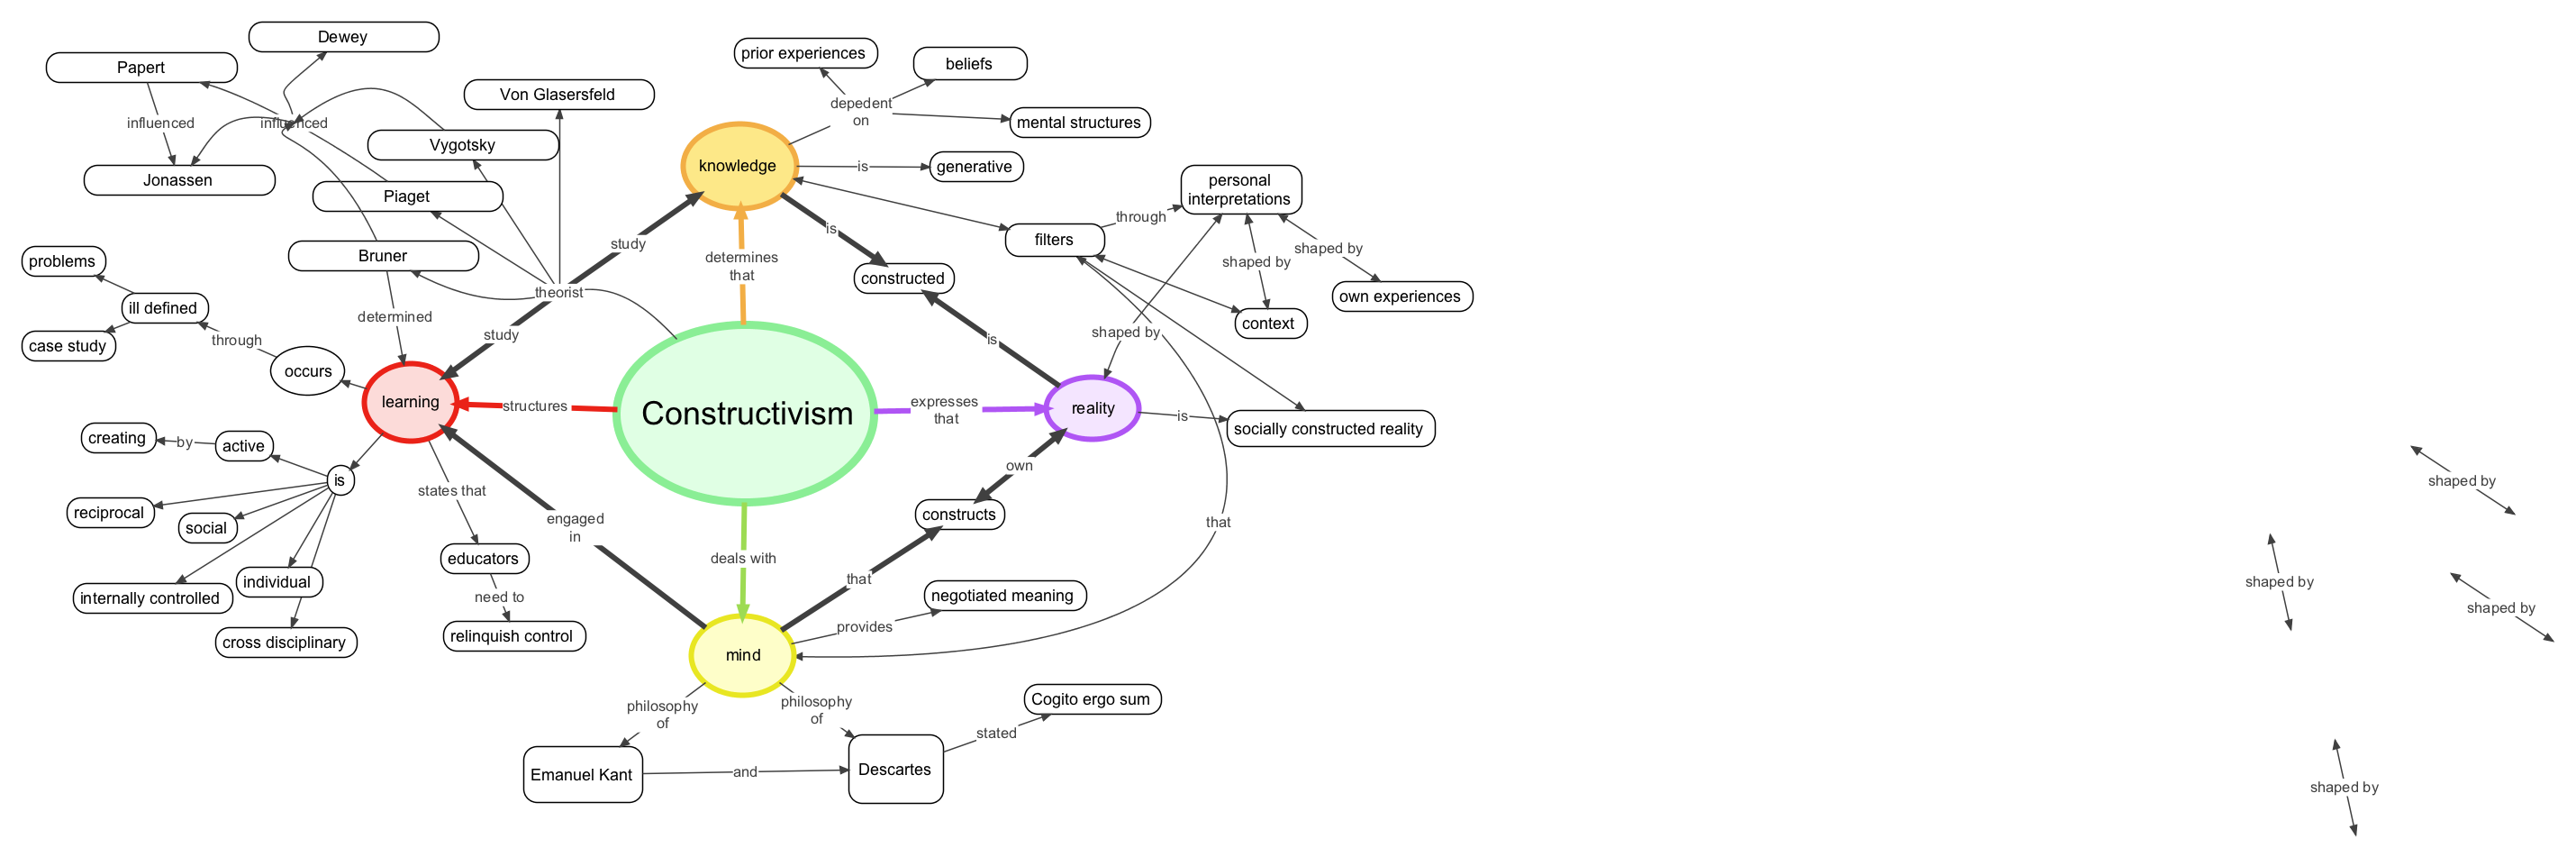 mind map of constructivist concepts